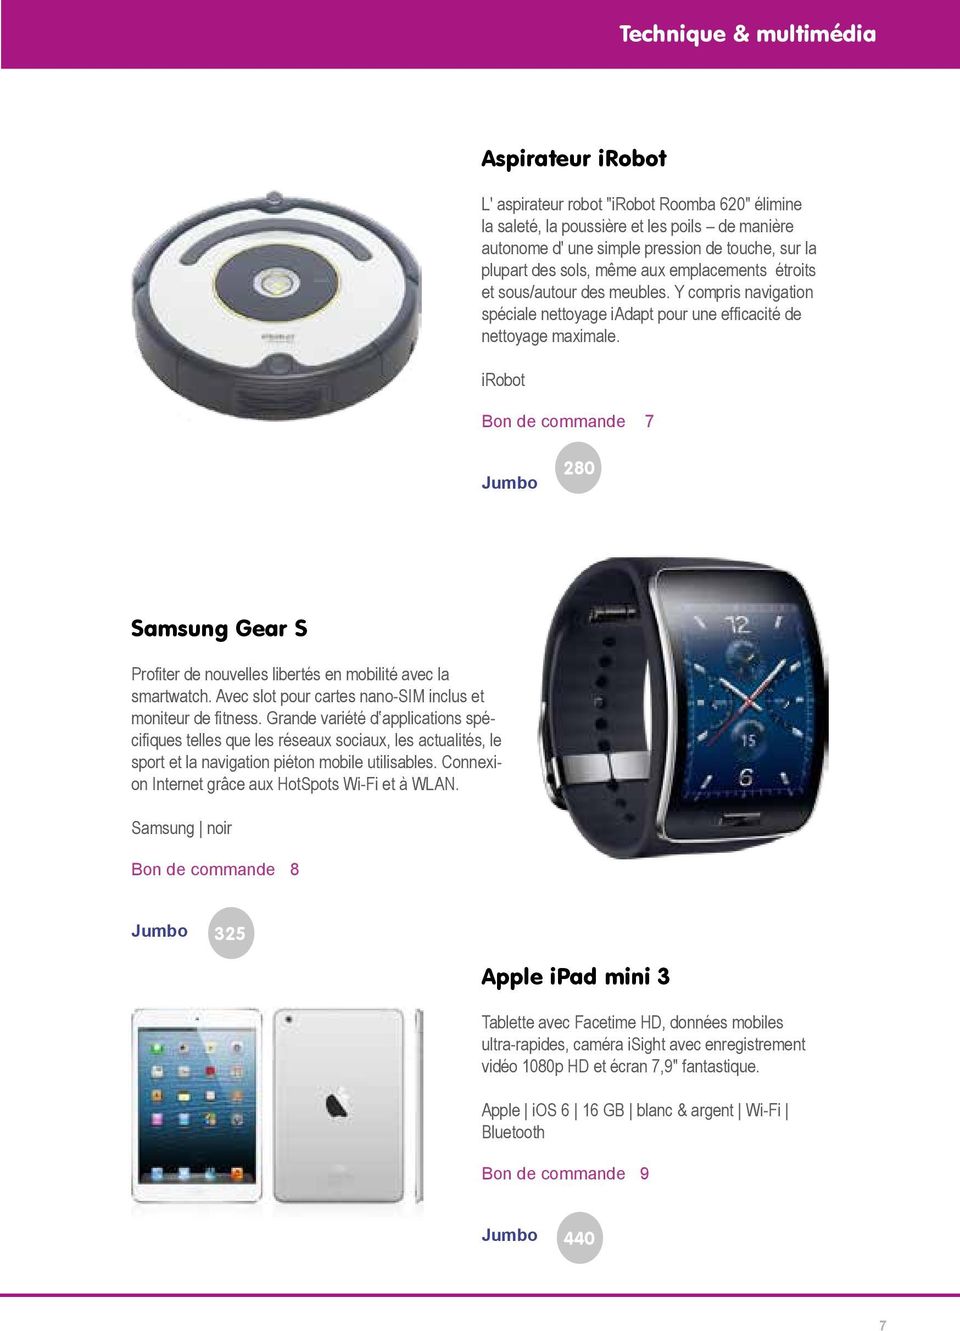 irobot Bon de commande 7 280 Samsung Gear S Profiter de nouvelles libertés en mobilité avec la smartwatch. Avec slot pour cartes nano-sim inclus et moniteur de fitness.